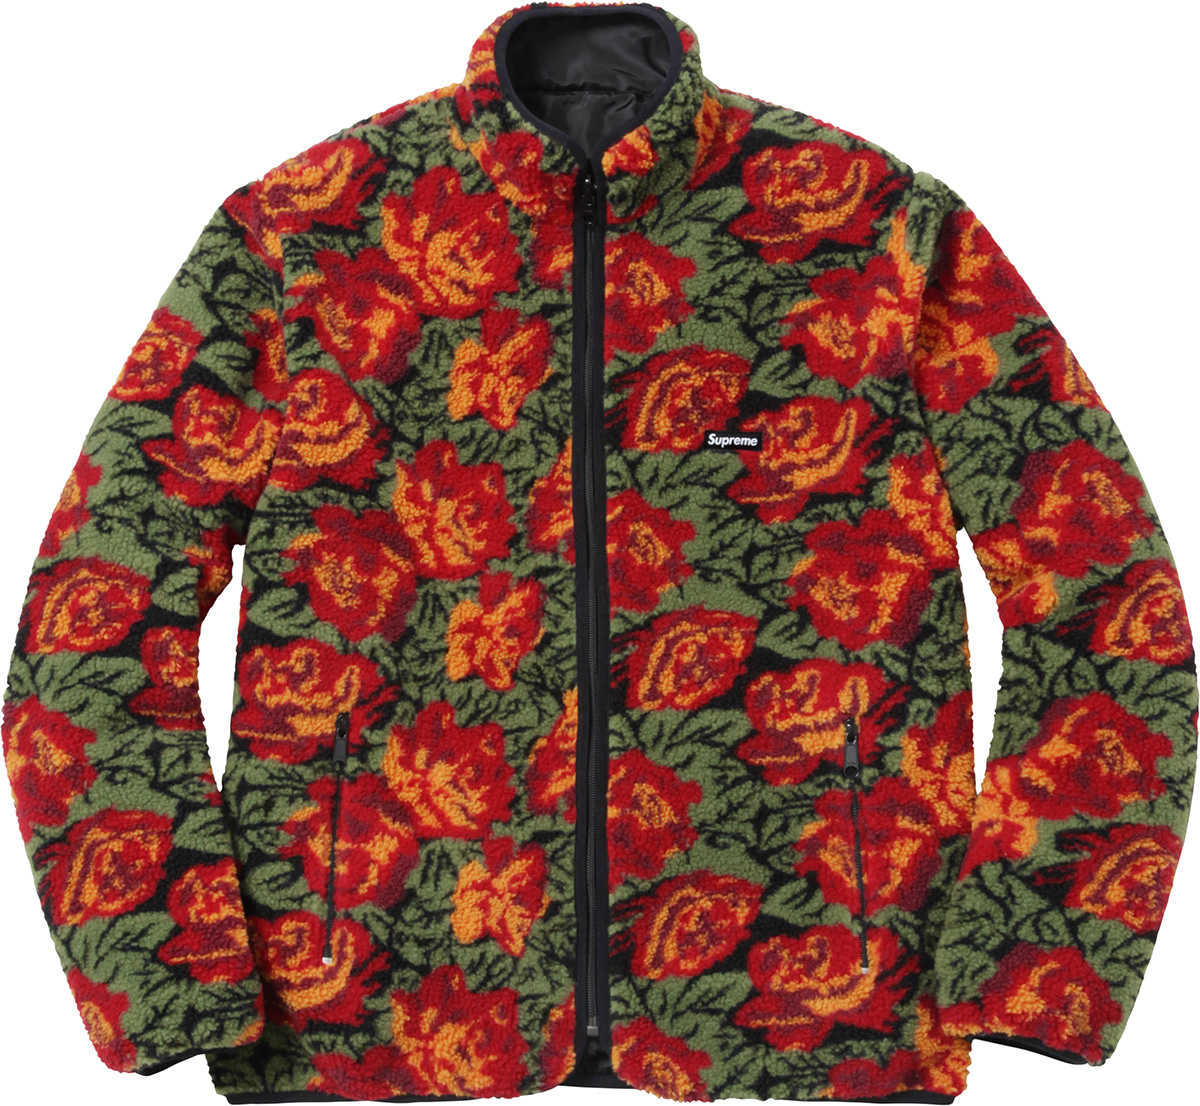 Roses Supreme Jacket